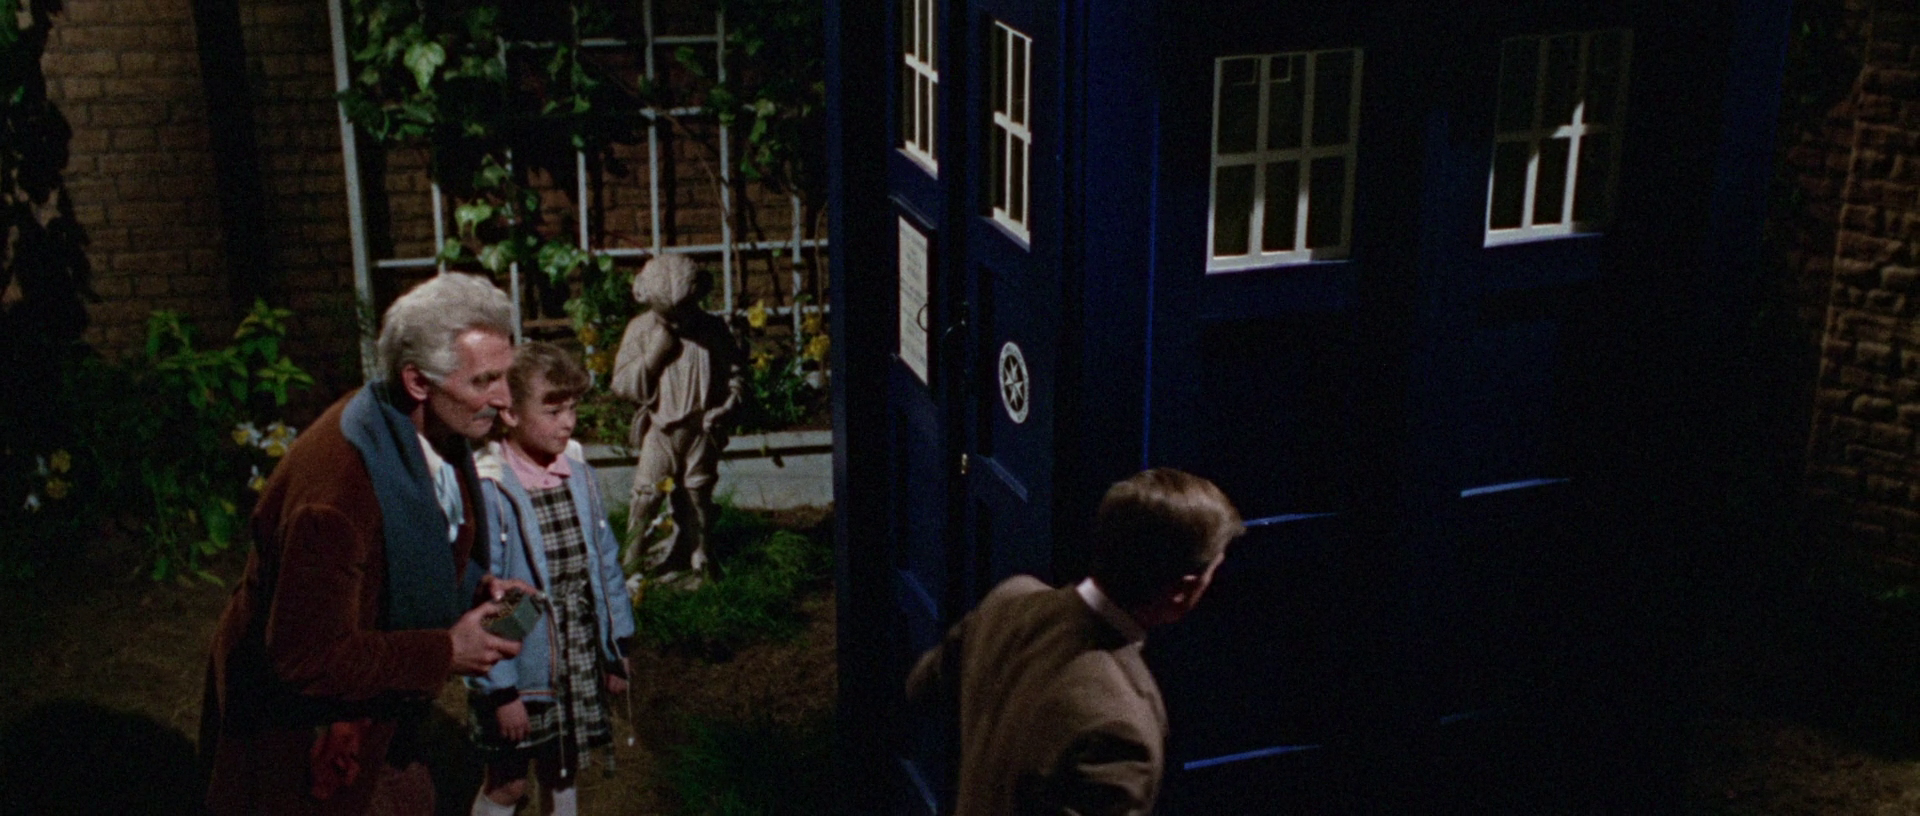 神秘博士与戴立克 Dr.Who.and.the.Daleks.1965.REMASTERED.1080p.BluRay.x264.DTS-FGT 7.50GB